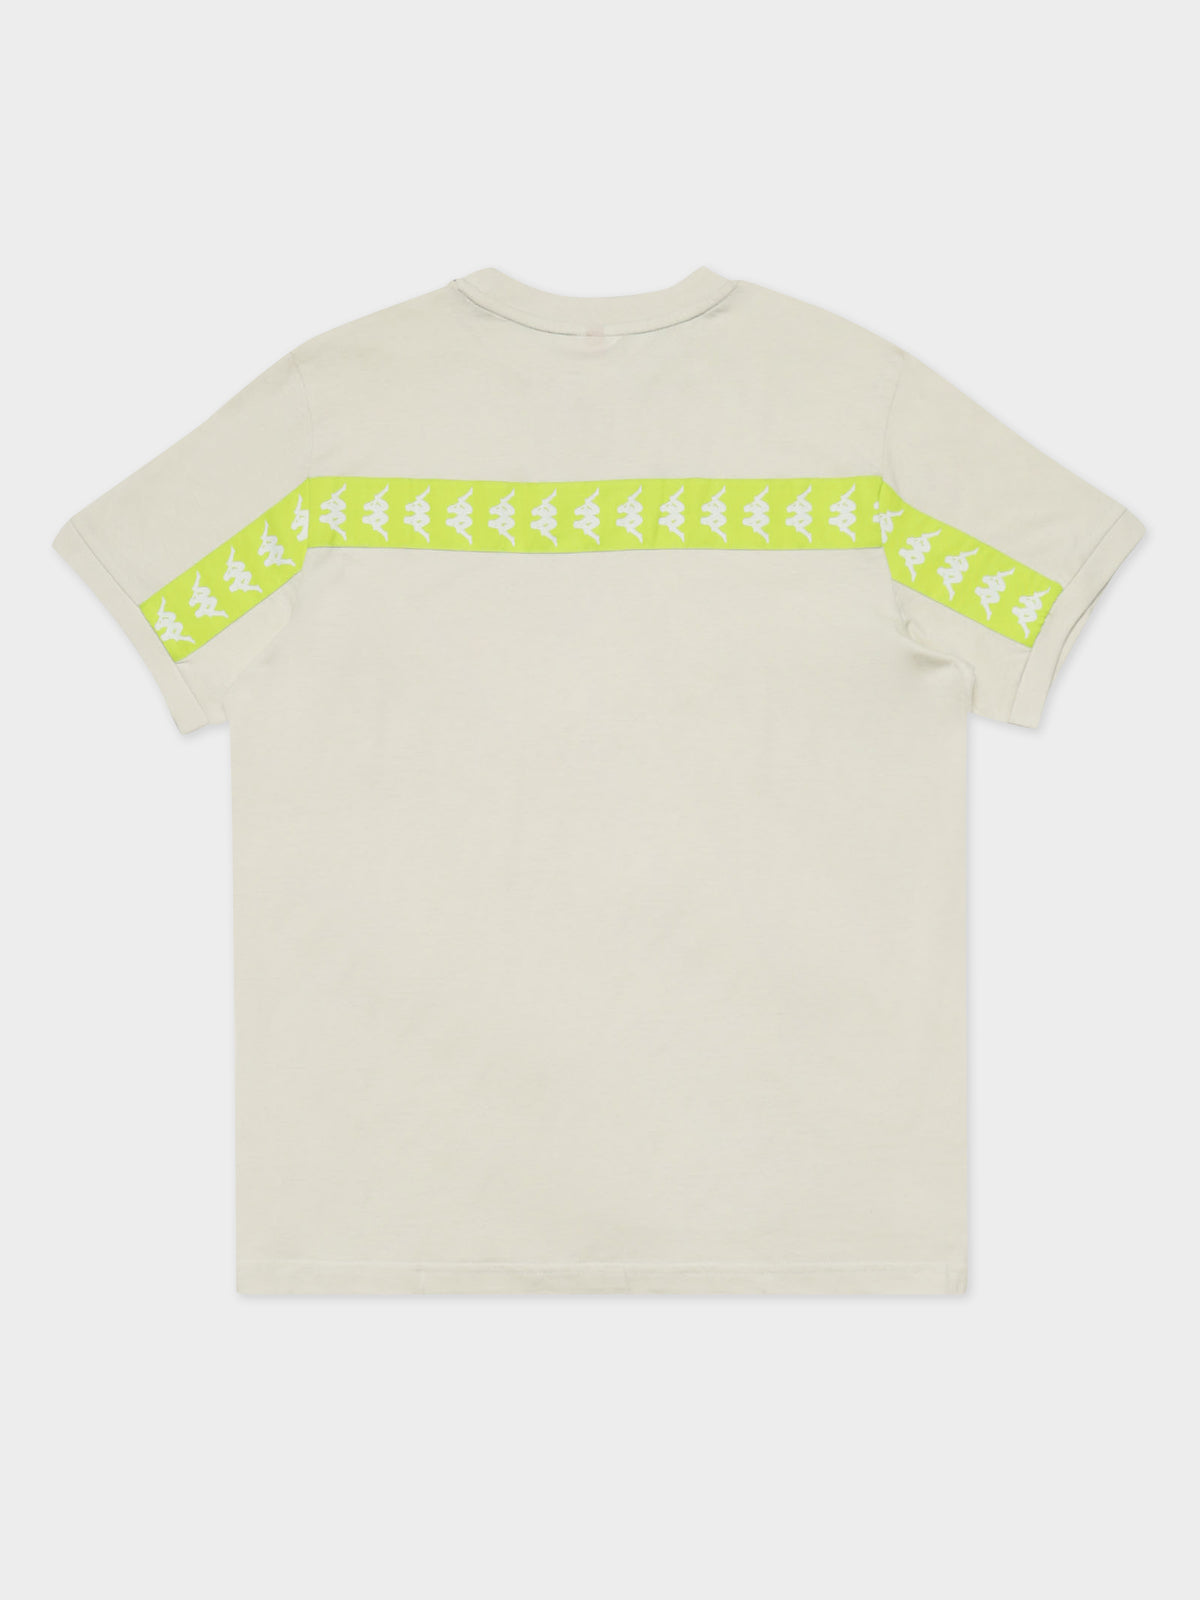 222 Banda Daffon T-Shirt in Grey &amp; Lime Green